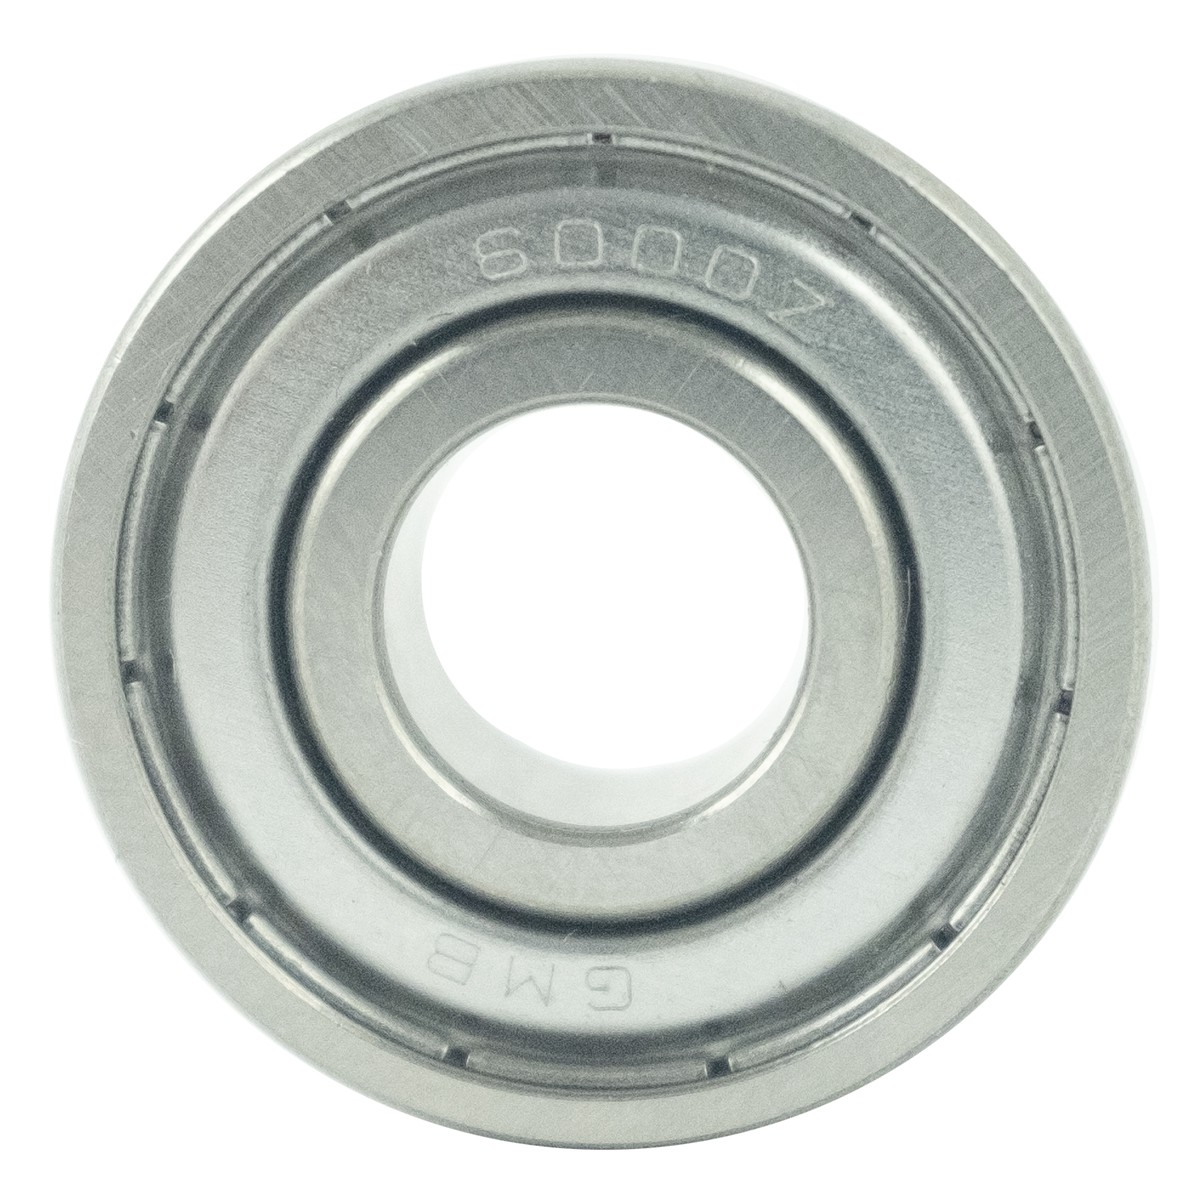 Ball bearing 10 x 26 x 8 mm / LS XJ25 / 60002 / A0860002 / 40012922